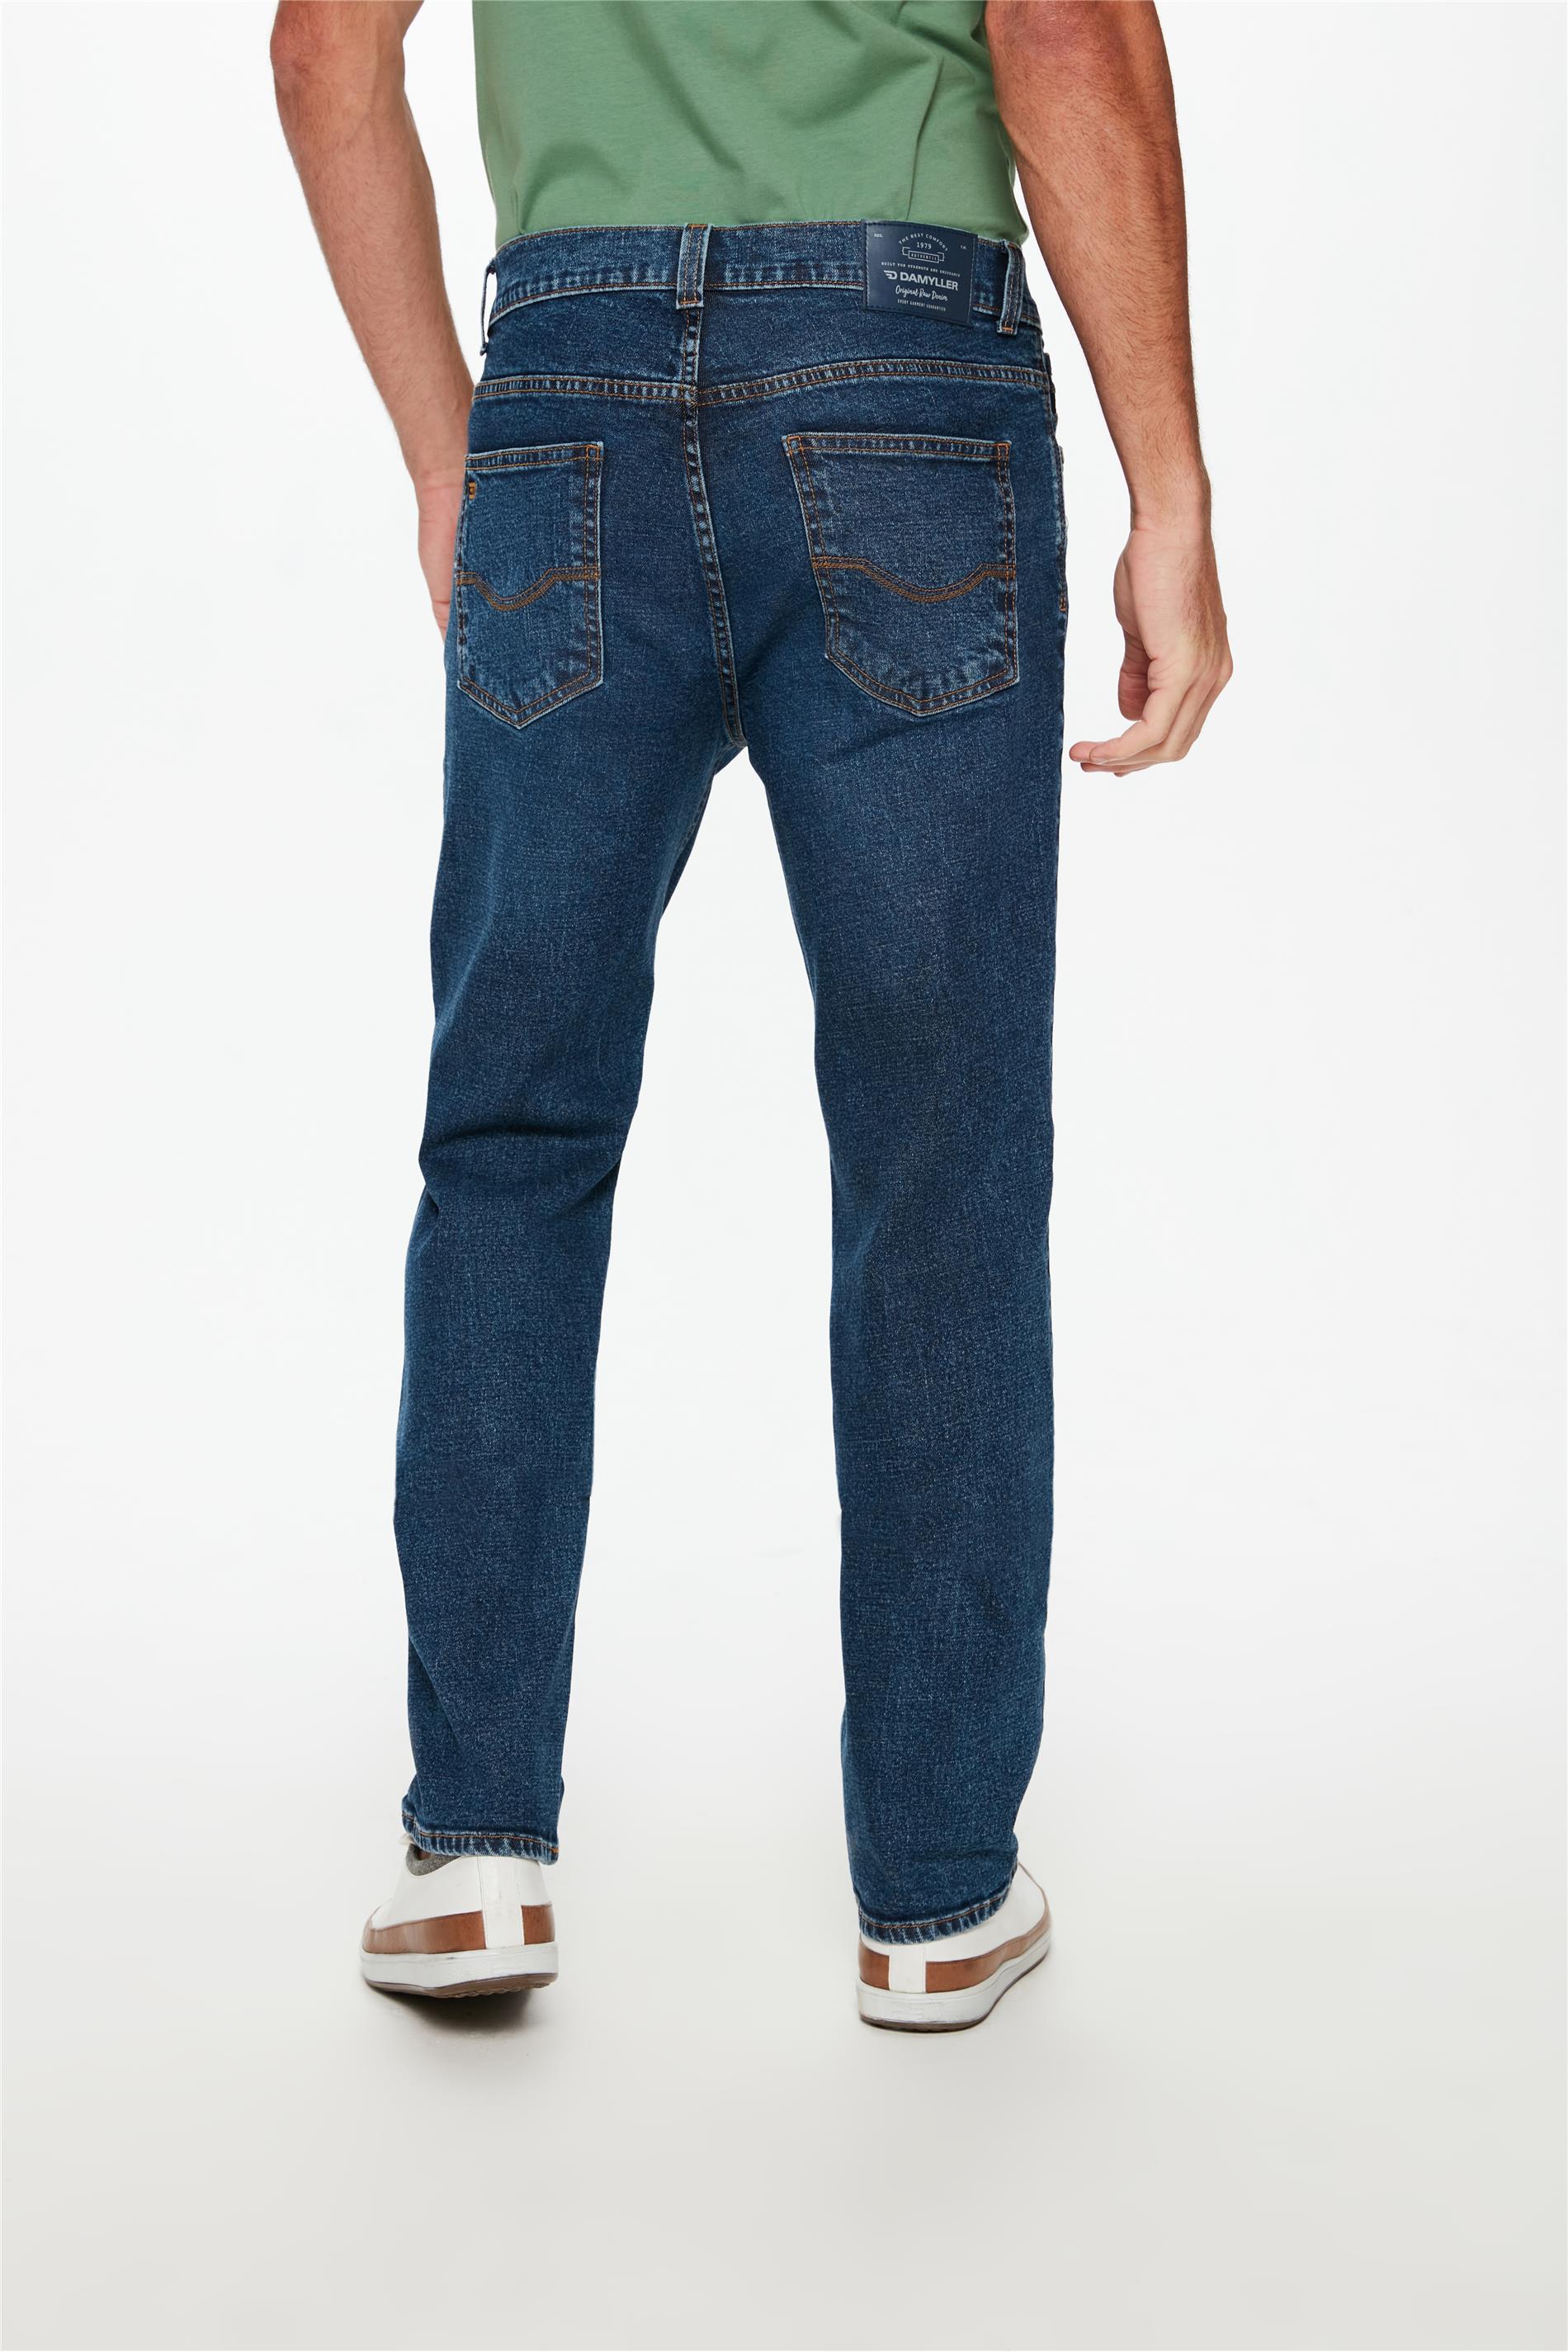 Calça Jeans Masculina Reta Cintura Alta e Rebites - Damyller - O Jeans da  Vida Real